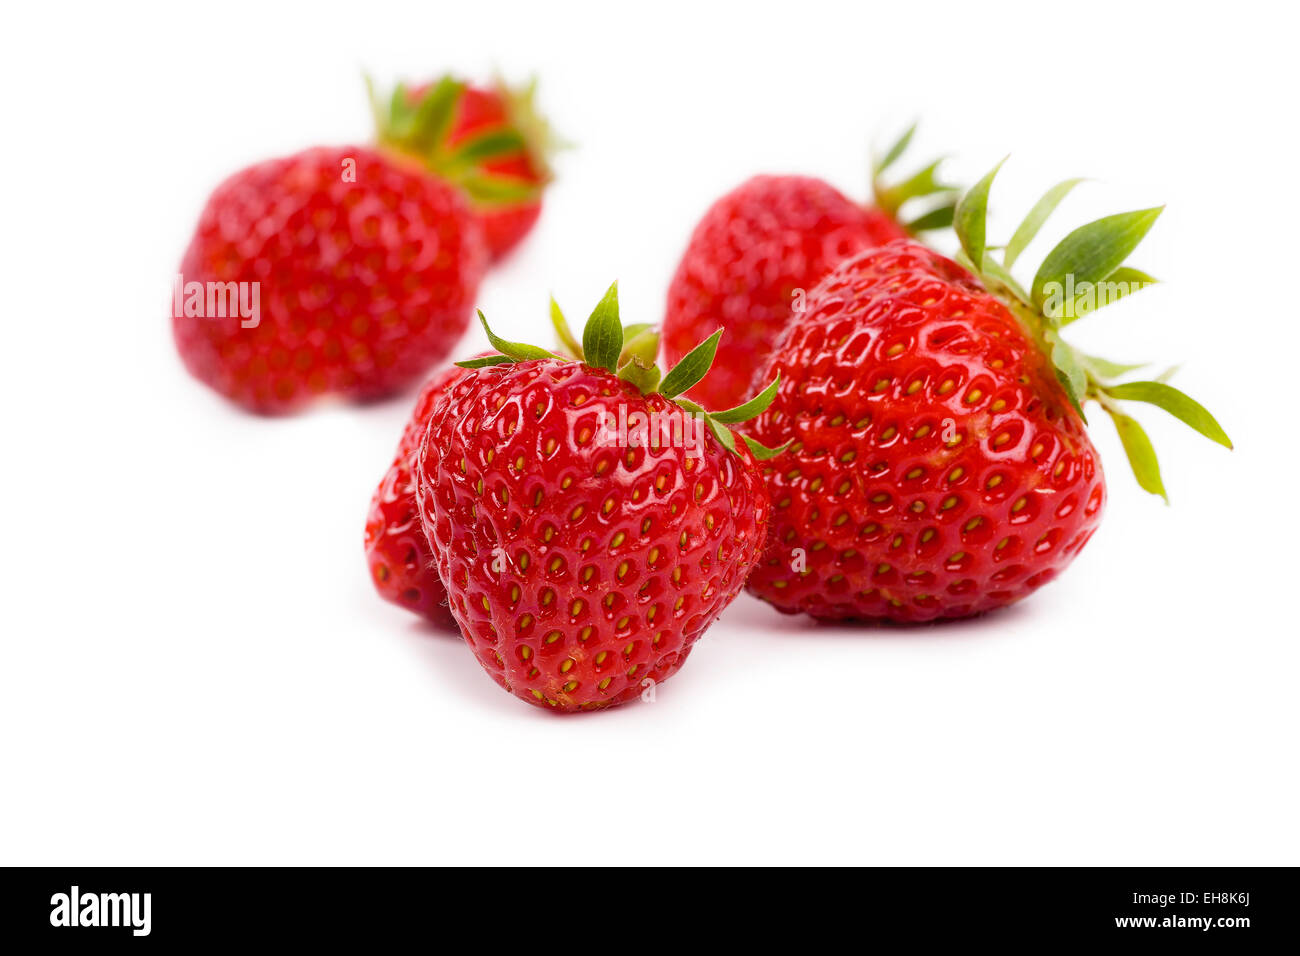 Nordöstlichen Amerika angebaut Erdbeeren auf weißem Hintergrund.  Vielfalt heißt Juwel. Stockfoto